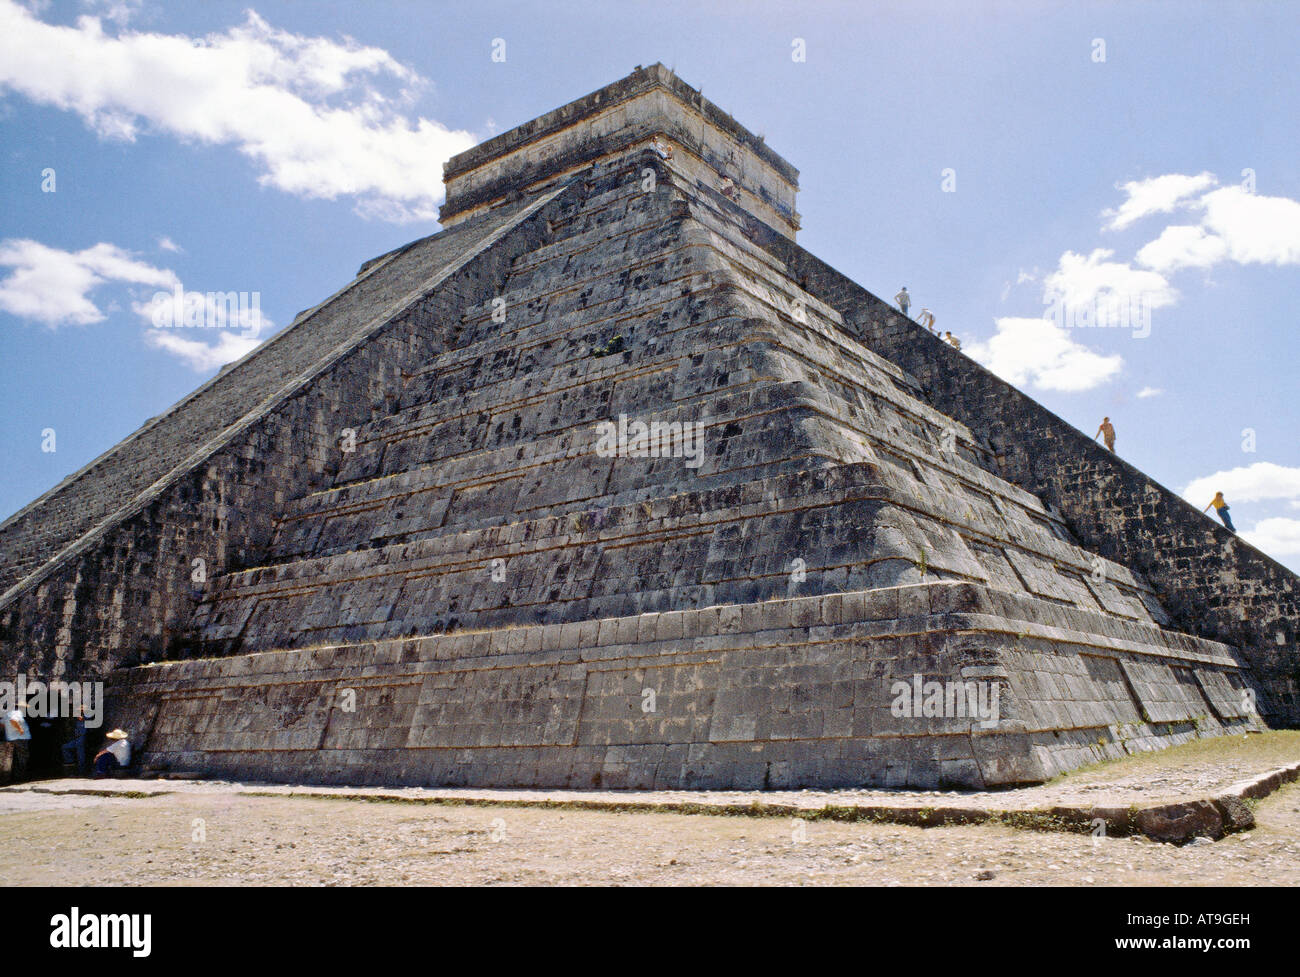 Sur le site de pyramide de Chichen Itza au Mexique Yucatan Banque D'Images